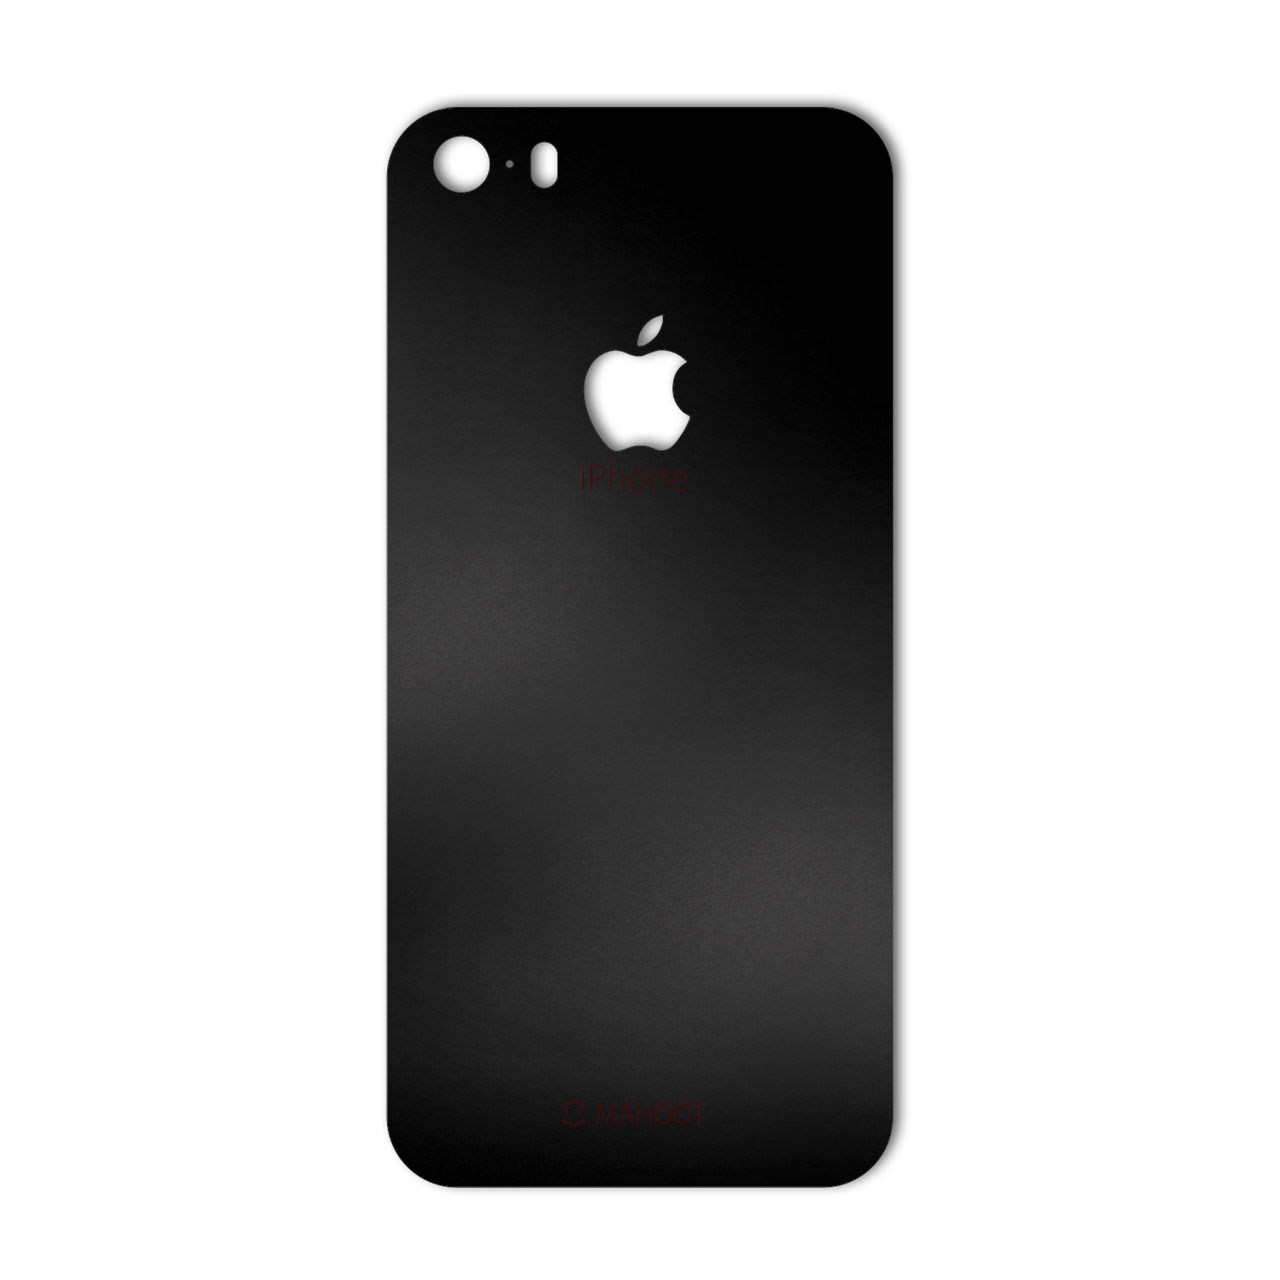 برچسب پوششی ماهوت مدل Black-color-shades Special مناسب برای گوشی  iPhone 5S-SE